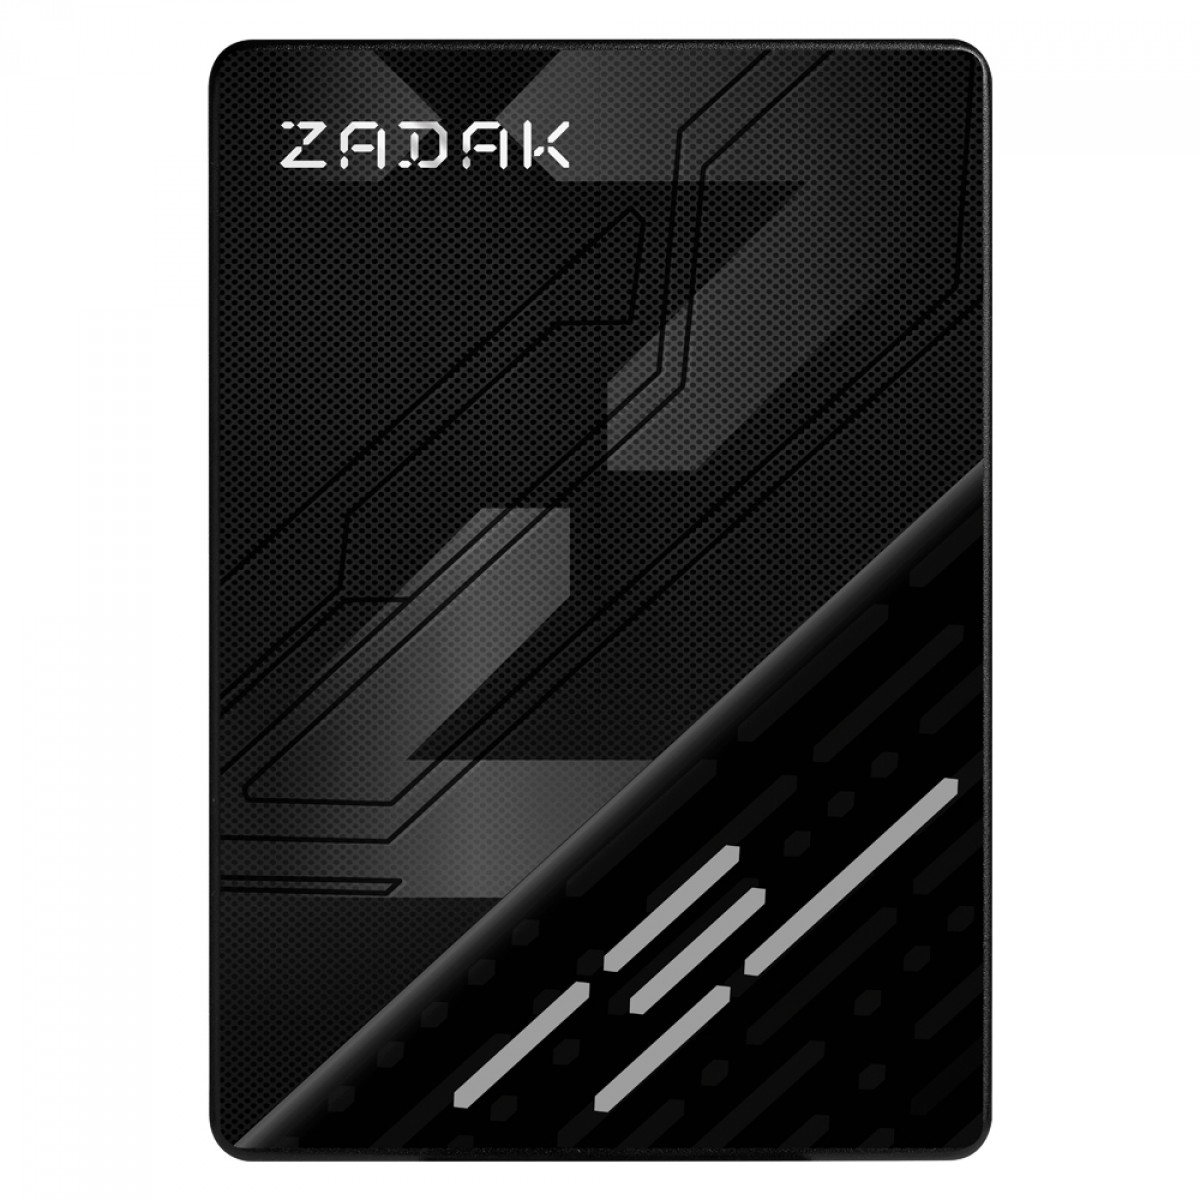 SSD Zadak TWSS3, 256GB, Sata III, Leitura 560MB/s e Gravação 540MB/s, ZS256GTWSS3-1